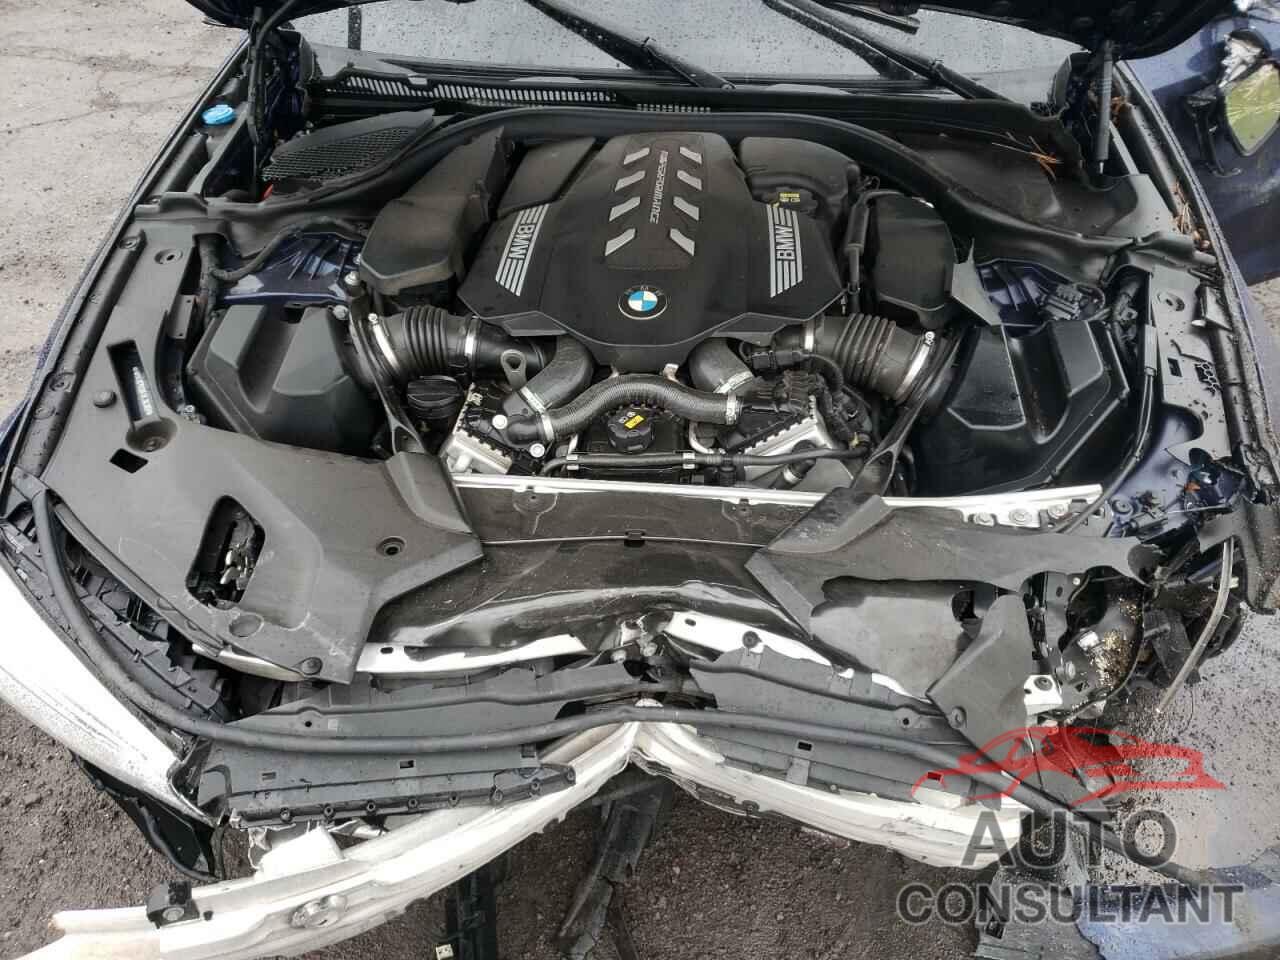 BMW M5 2020 - WBAJS7C08LCE36388